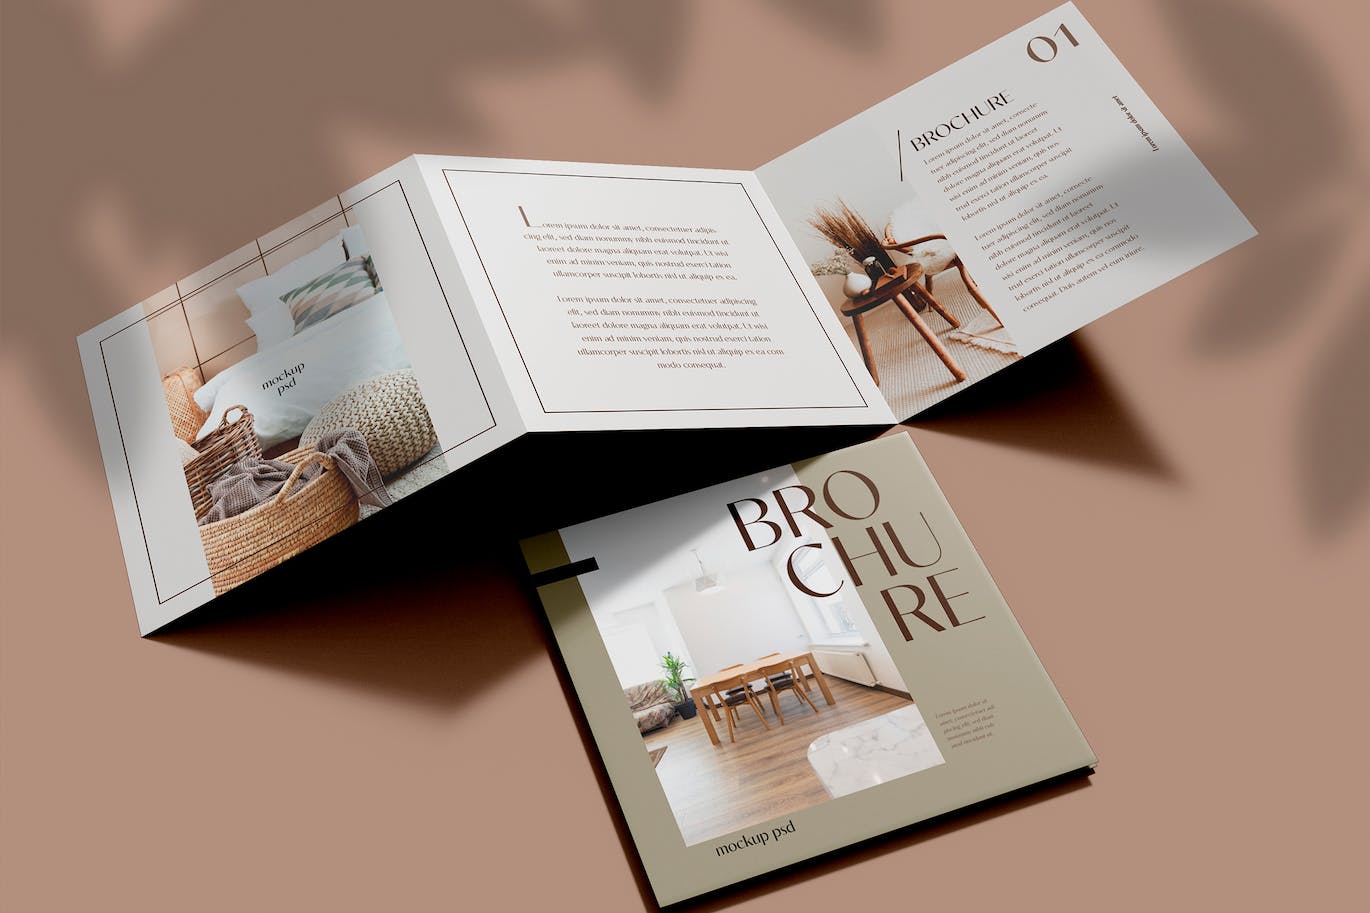 折页时尚杂志宣传册设计样机psd模板v6 Brochure Mockup 样机素材 第1张